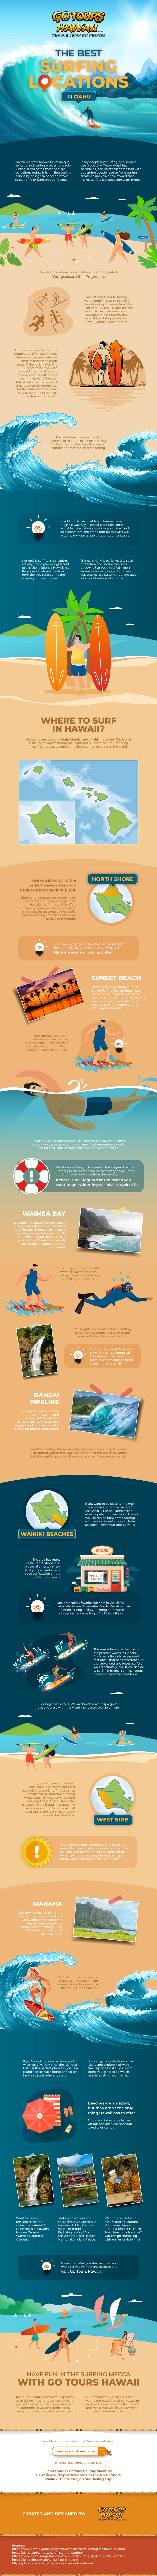 The-Best-Surfing-Locations-in-Oahu-JBFase256d